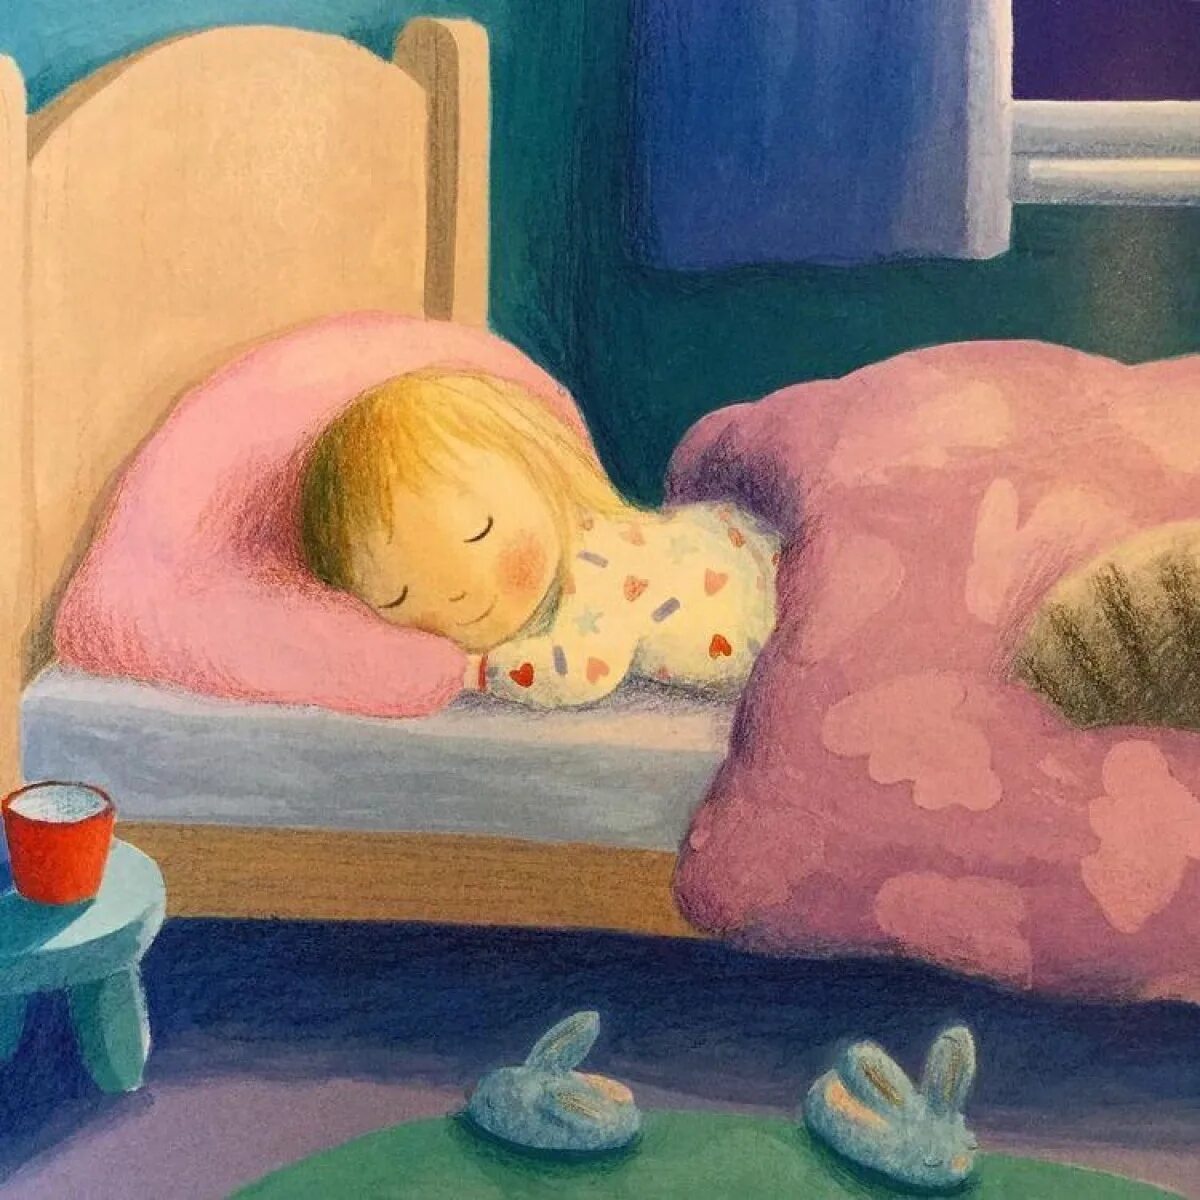 Сказки спать на ночь. Спящий ребенок. Детские иллюстрации сон.